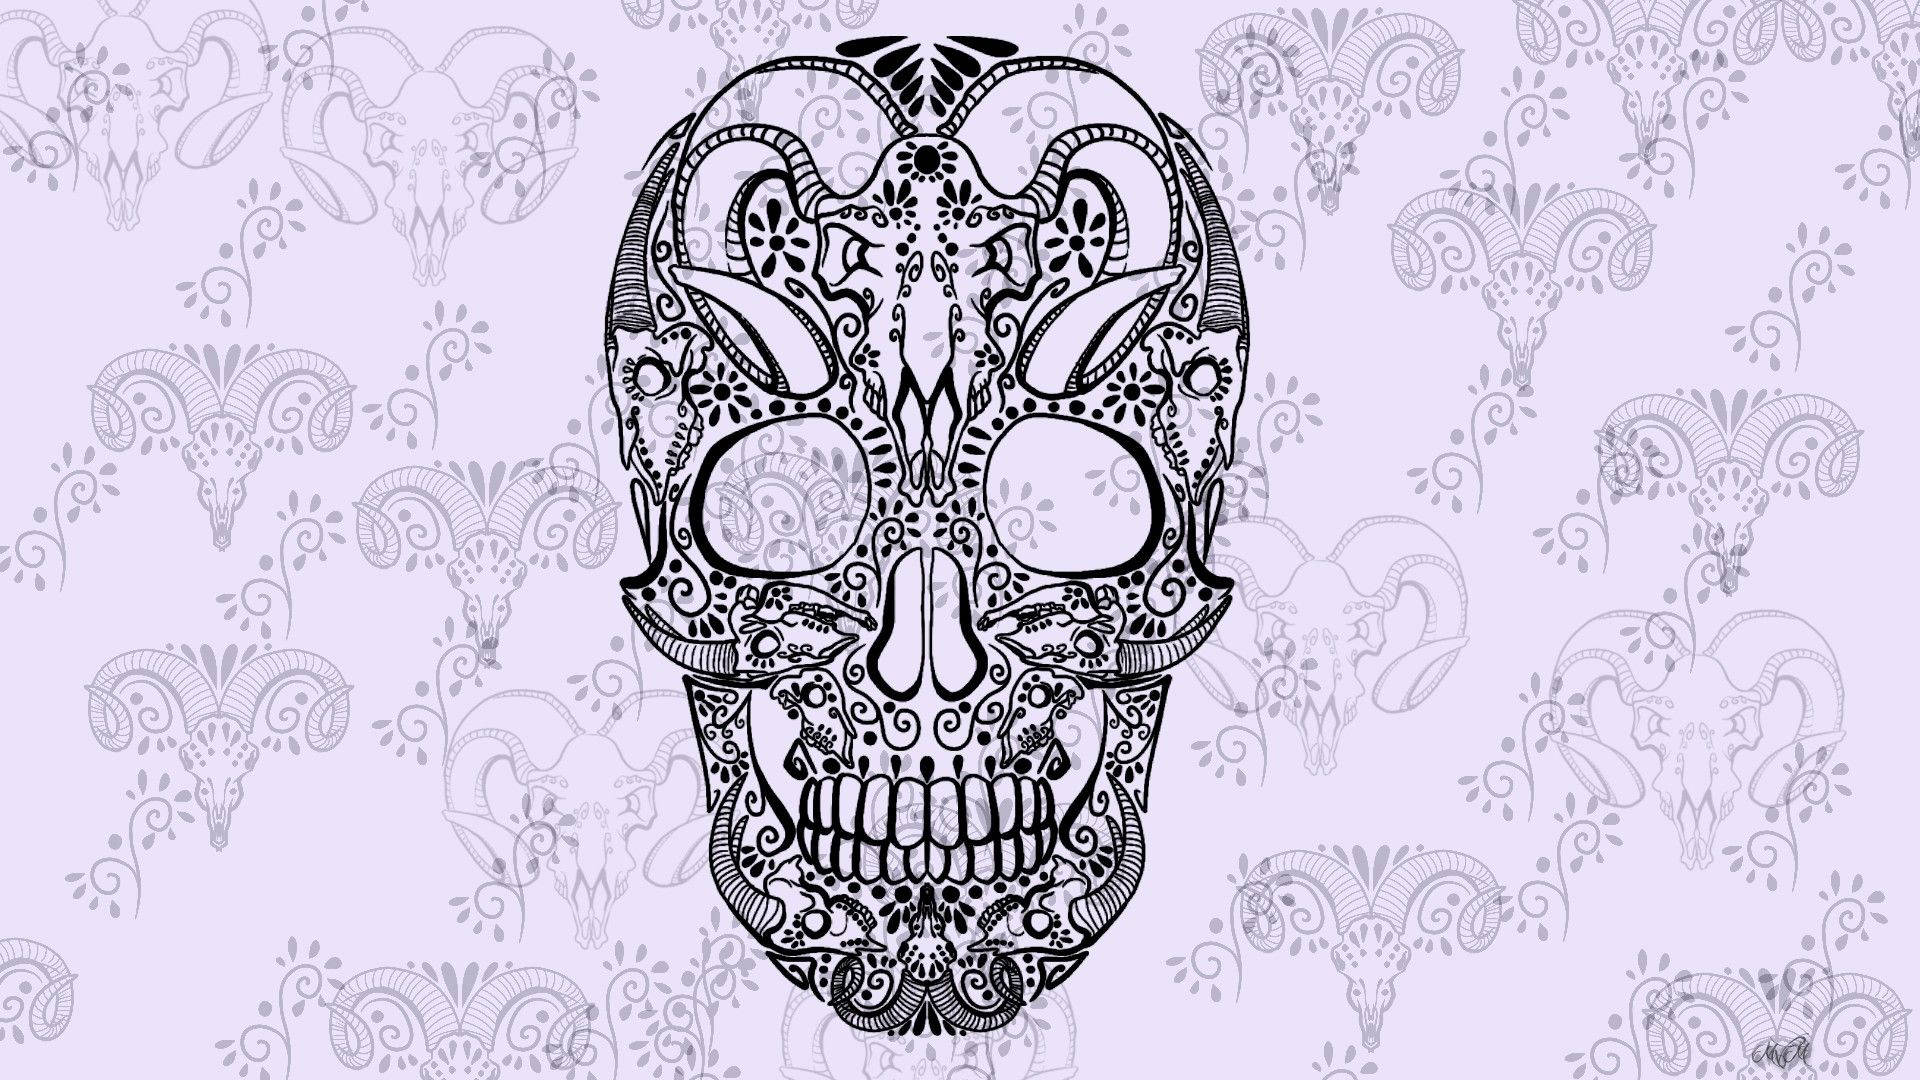 Vintage-inspired Sugar Skull Artwork Background